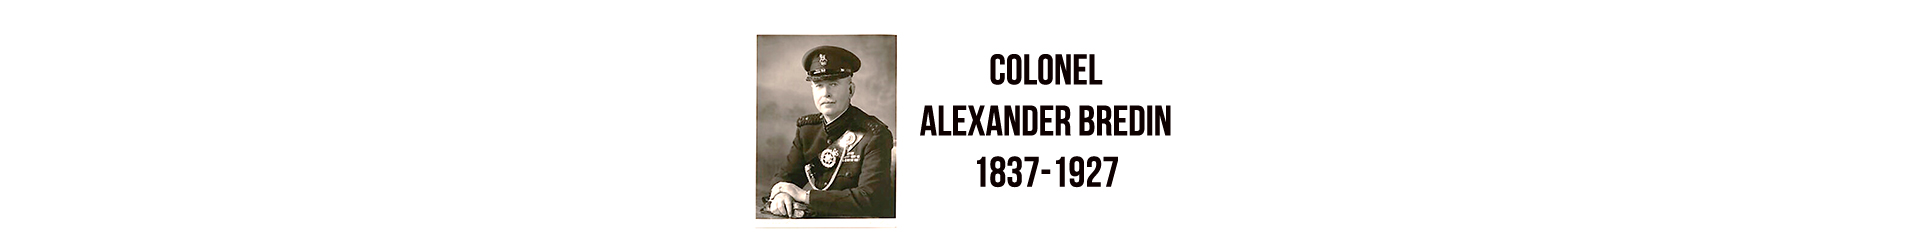 Colonel Alexander Bredin 1837-1927